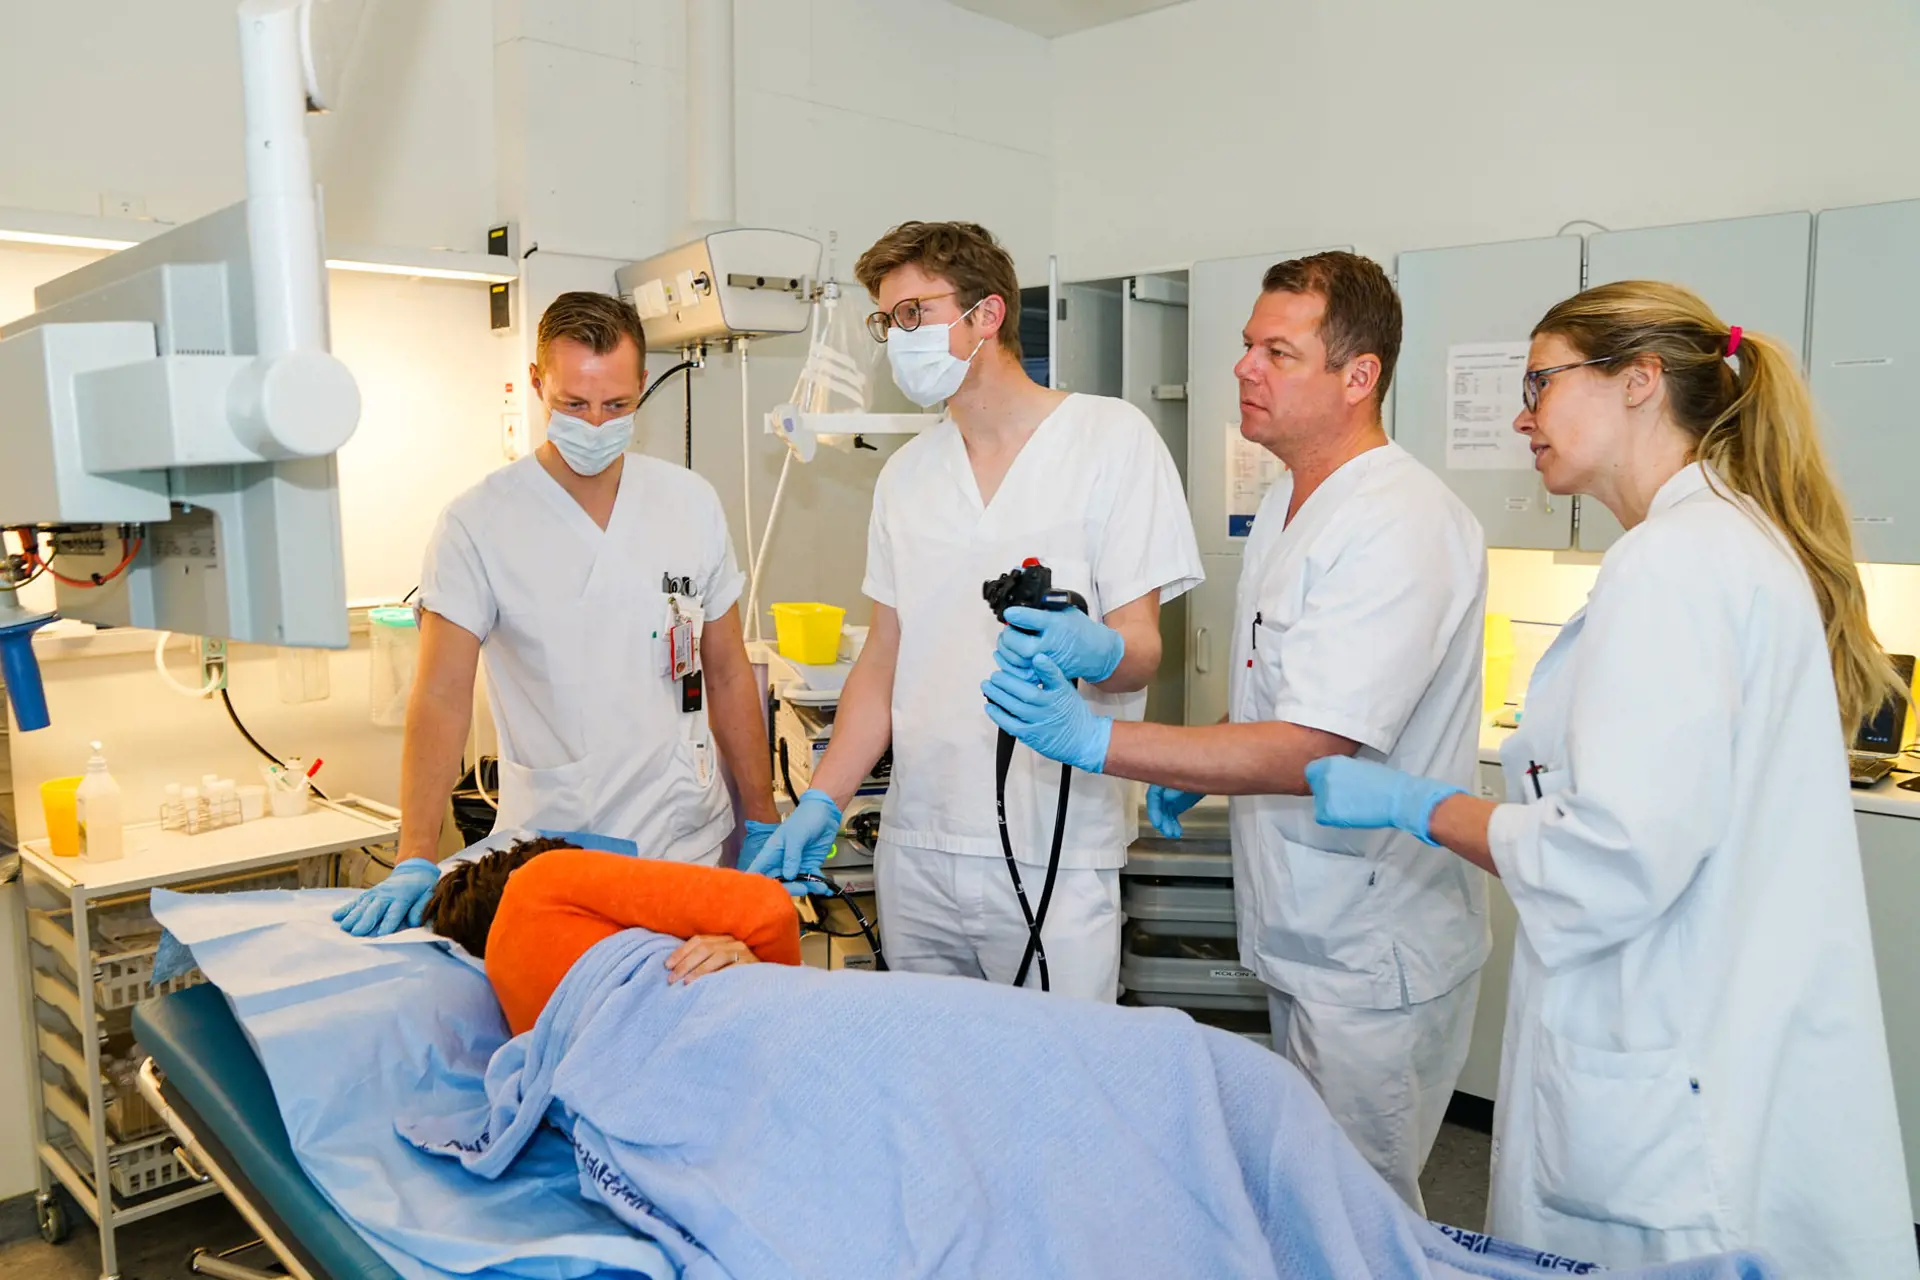 En LIS-lege blir rettledet av en erfaren lege når han skal utføre gastroskopi. To medleger ser på. En pasient ligger på sengen.